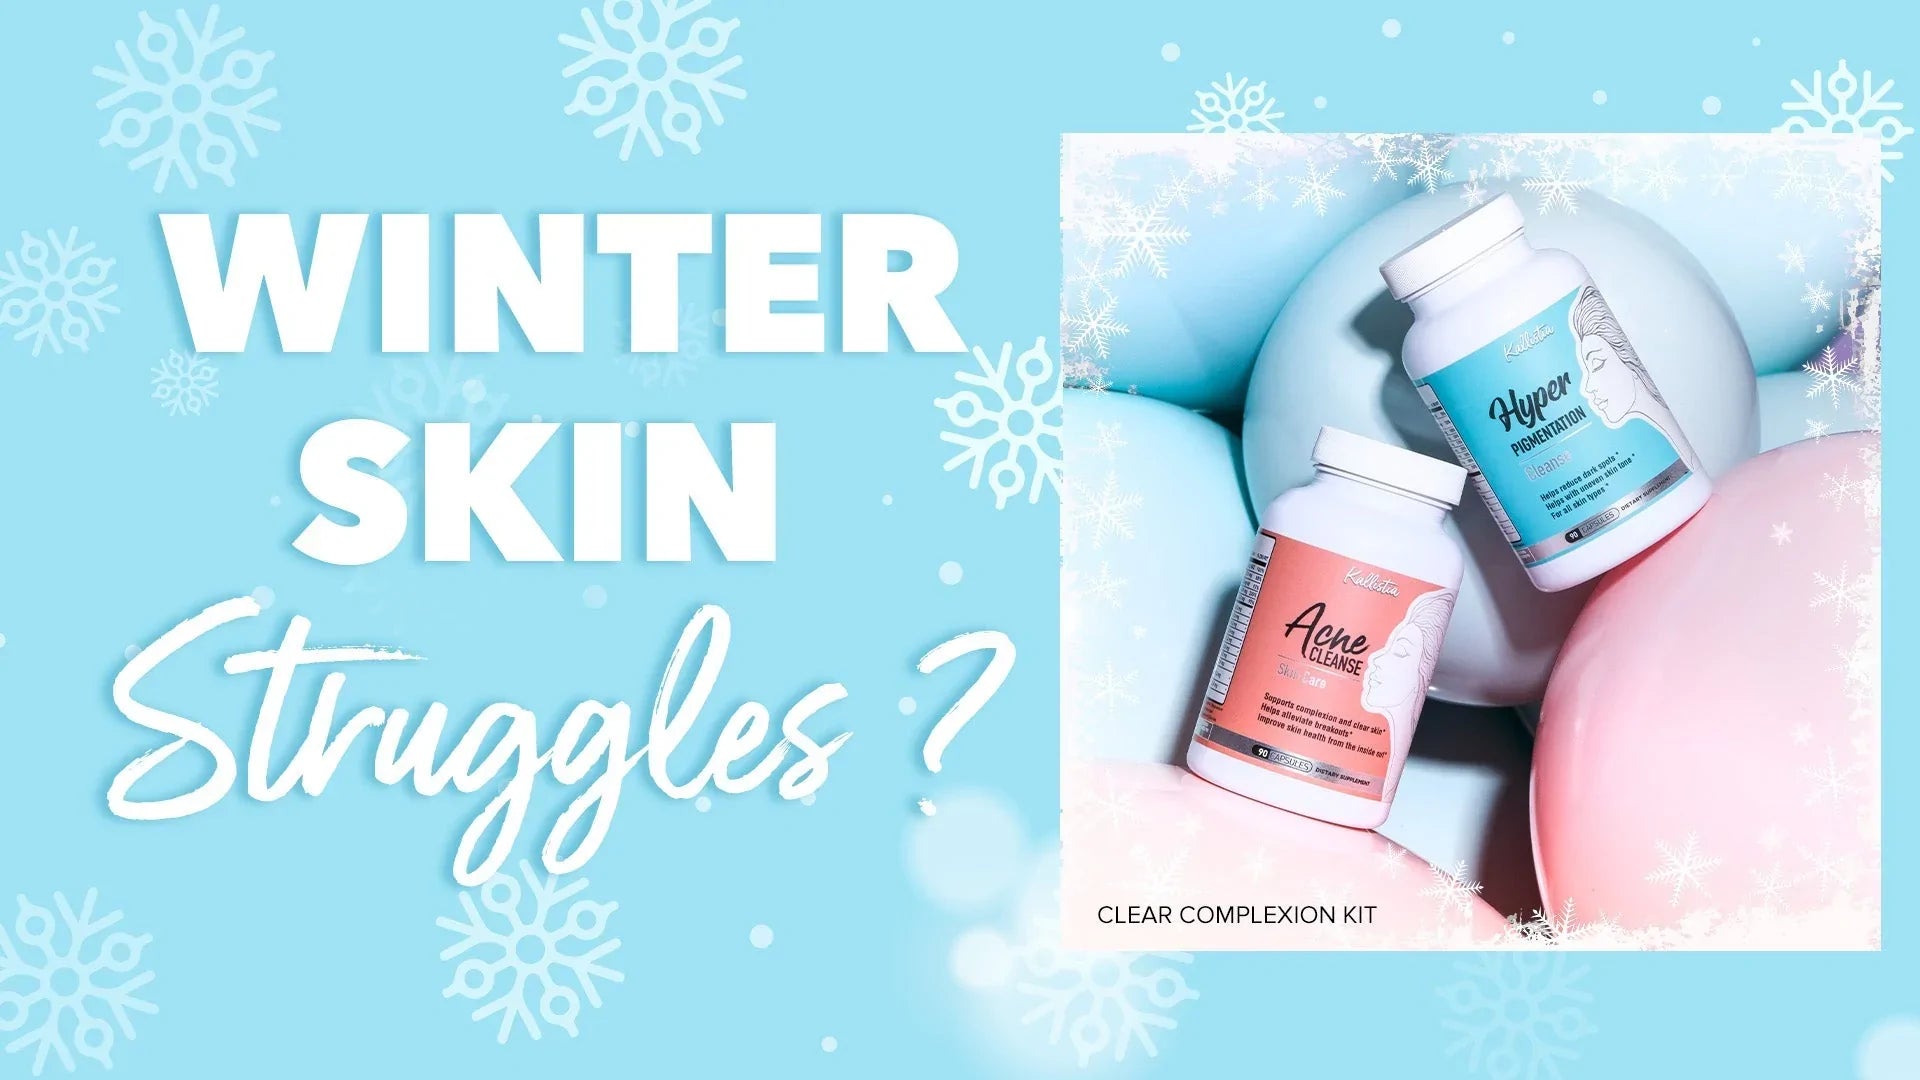 Winter Skin Struggles?